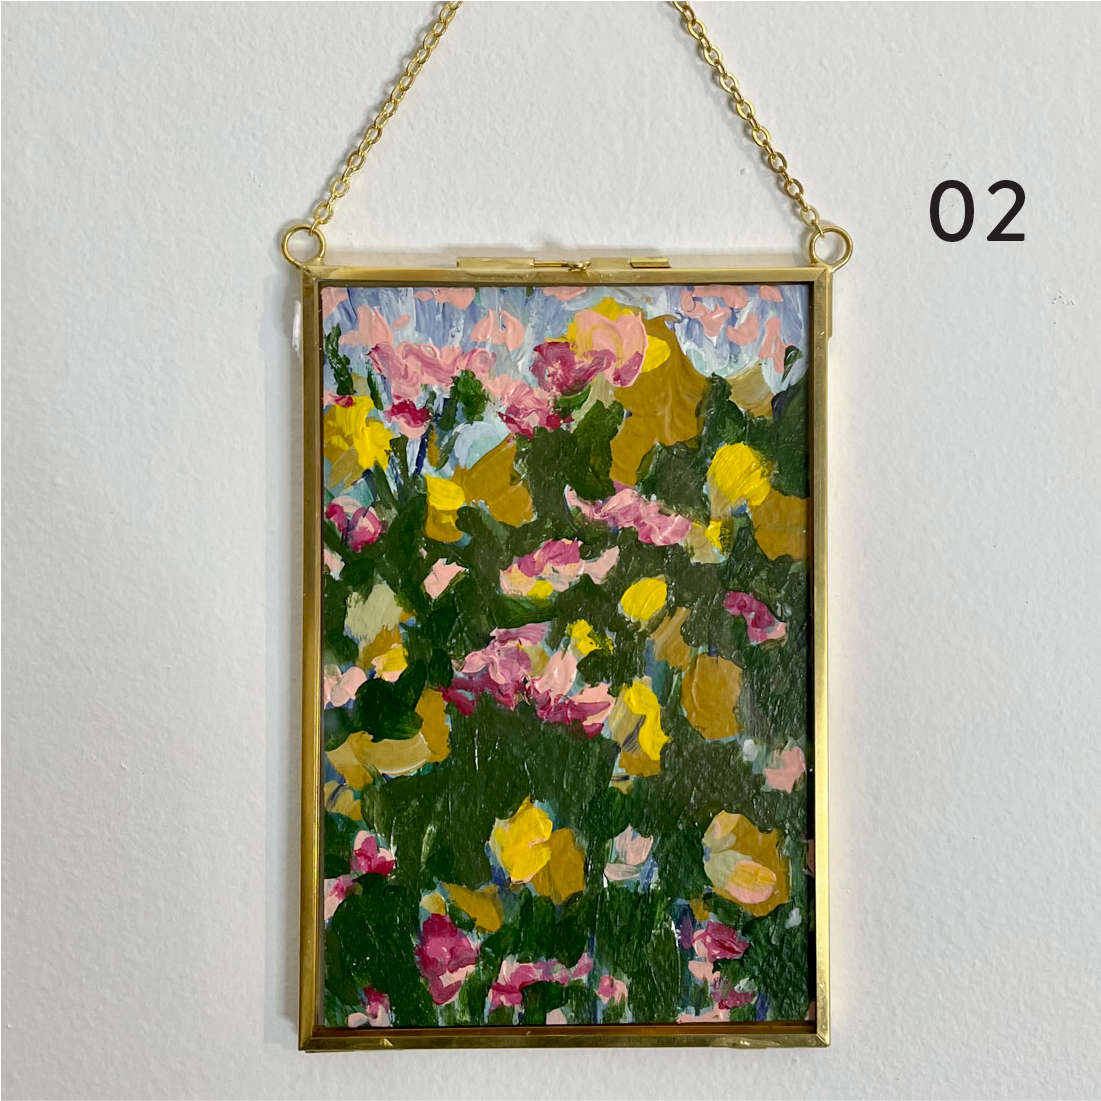 Mini Originals - 4x6" - Gold Hanging Frames